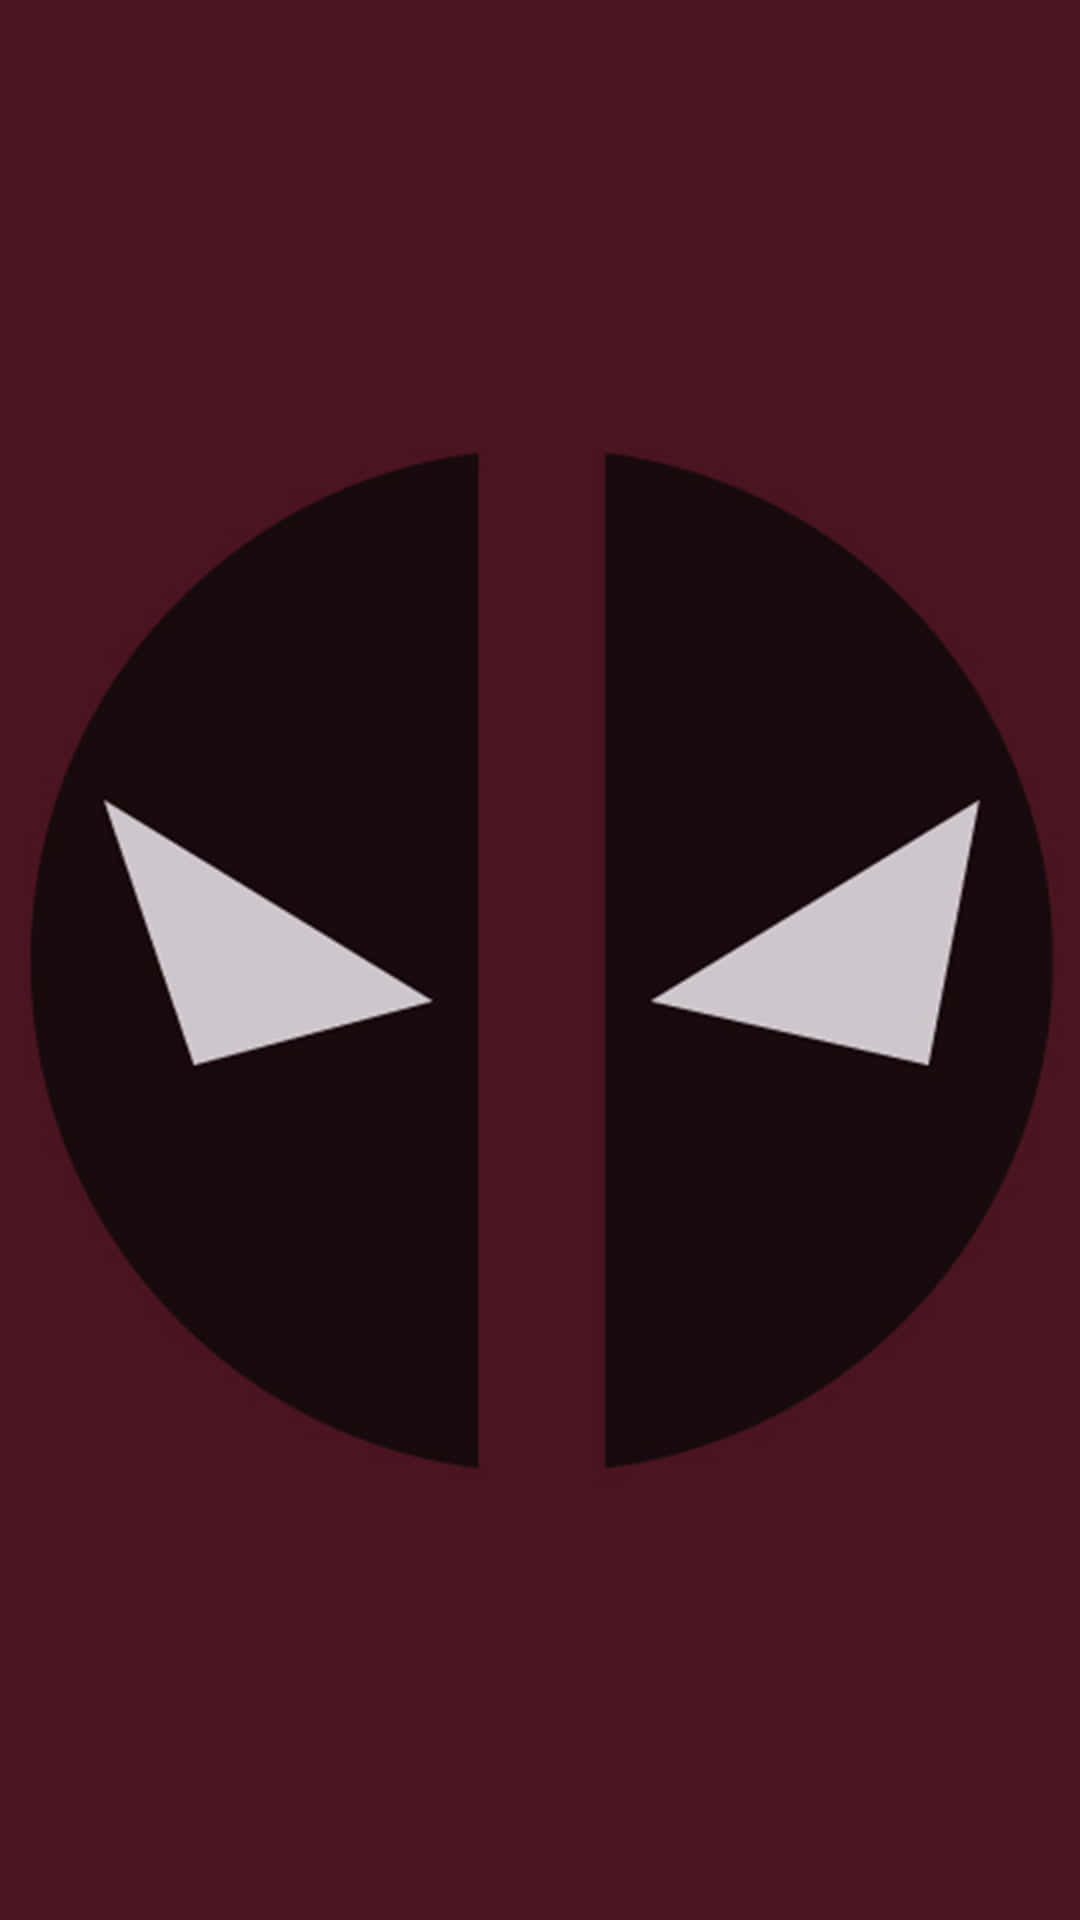 Geometric Minimalist Deadpool Logo Wallpaper